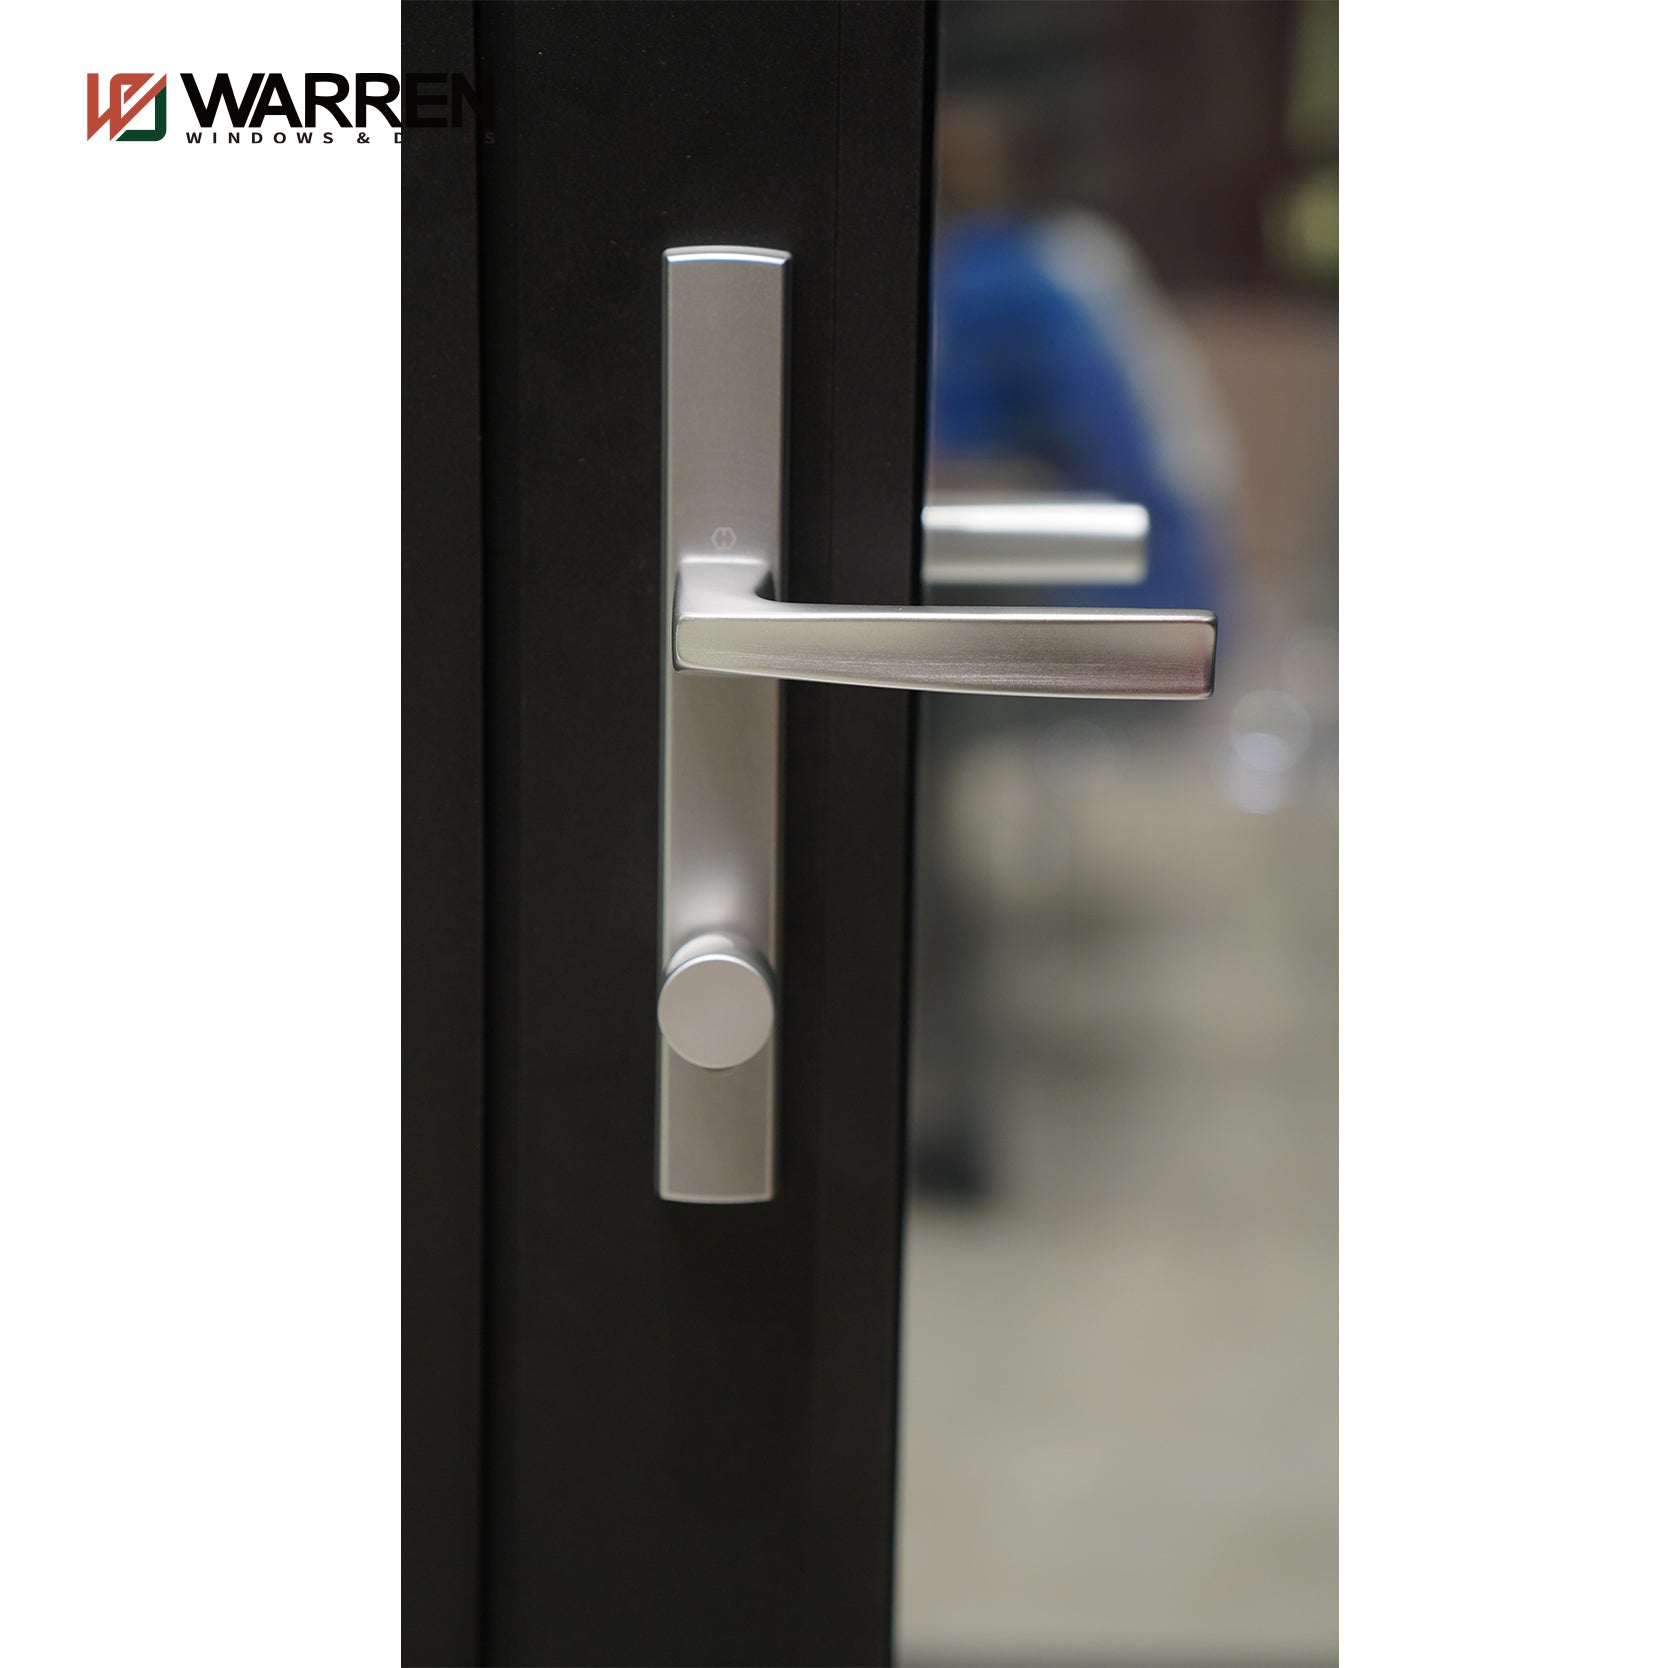 Warren 96x96 French Doors Exterior Anti-Theft Aluminum Security Front Doors Double Swing French Door